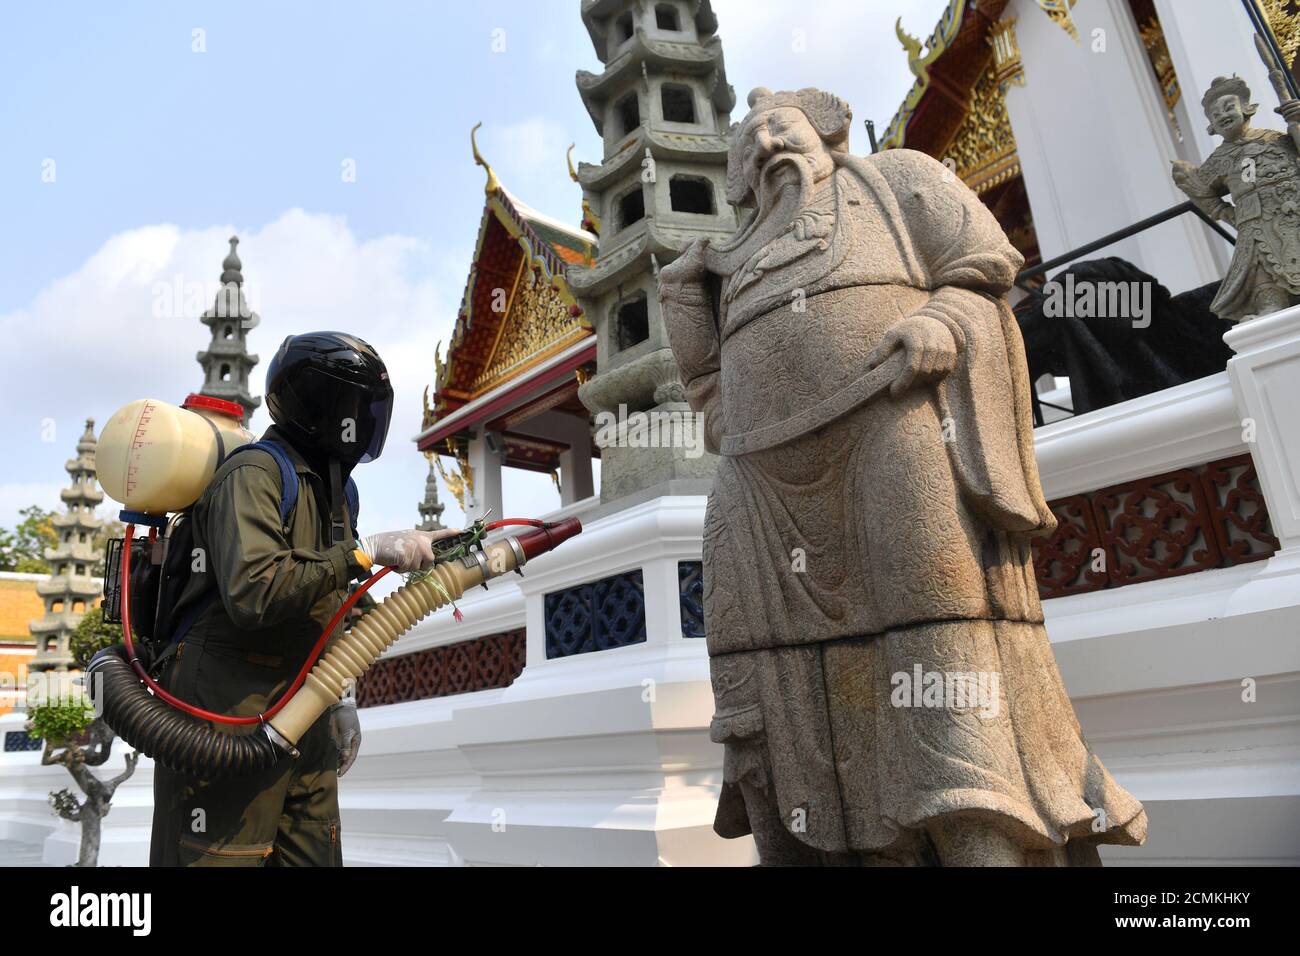 Un trabajador de la salud rocía desinfectante debido al brote de coronavirus en el interior del templo Wat Suthat Thepwararam en Bangkok, Tailandia 17 de marzo de 2020. REUTERS/Chalinee Thirasupa Foto de stock